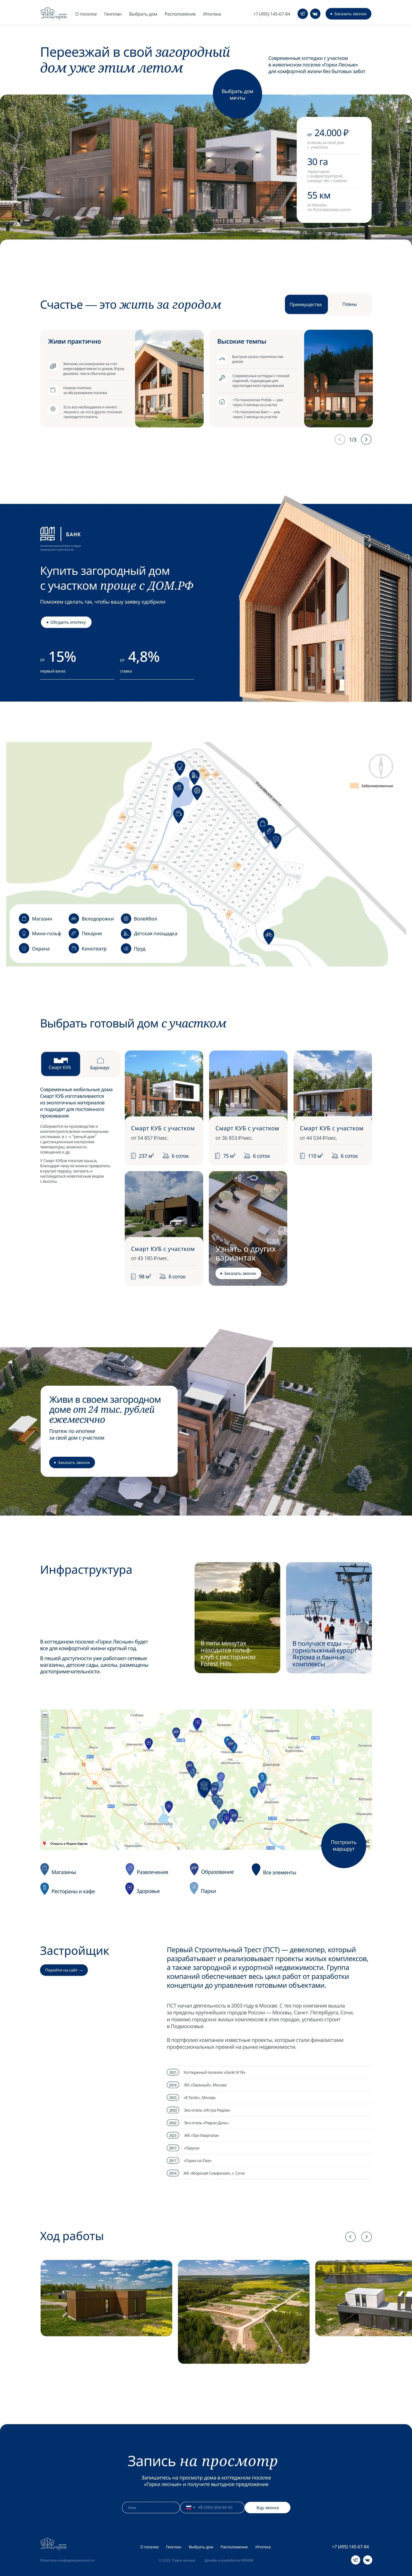 Пример посадочной страницы сайта для продажи загородной недвижимости